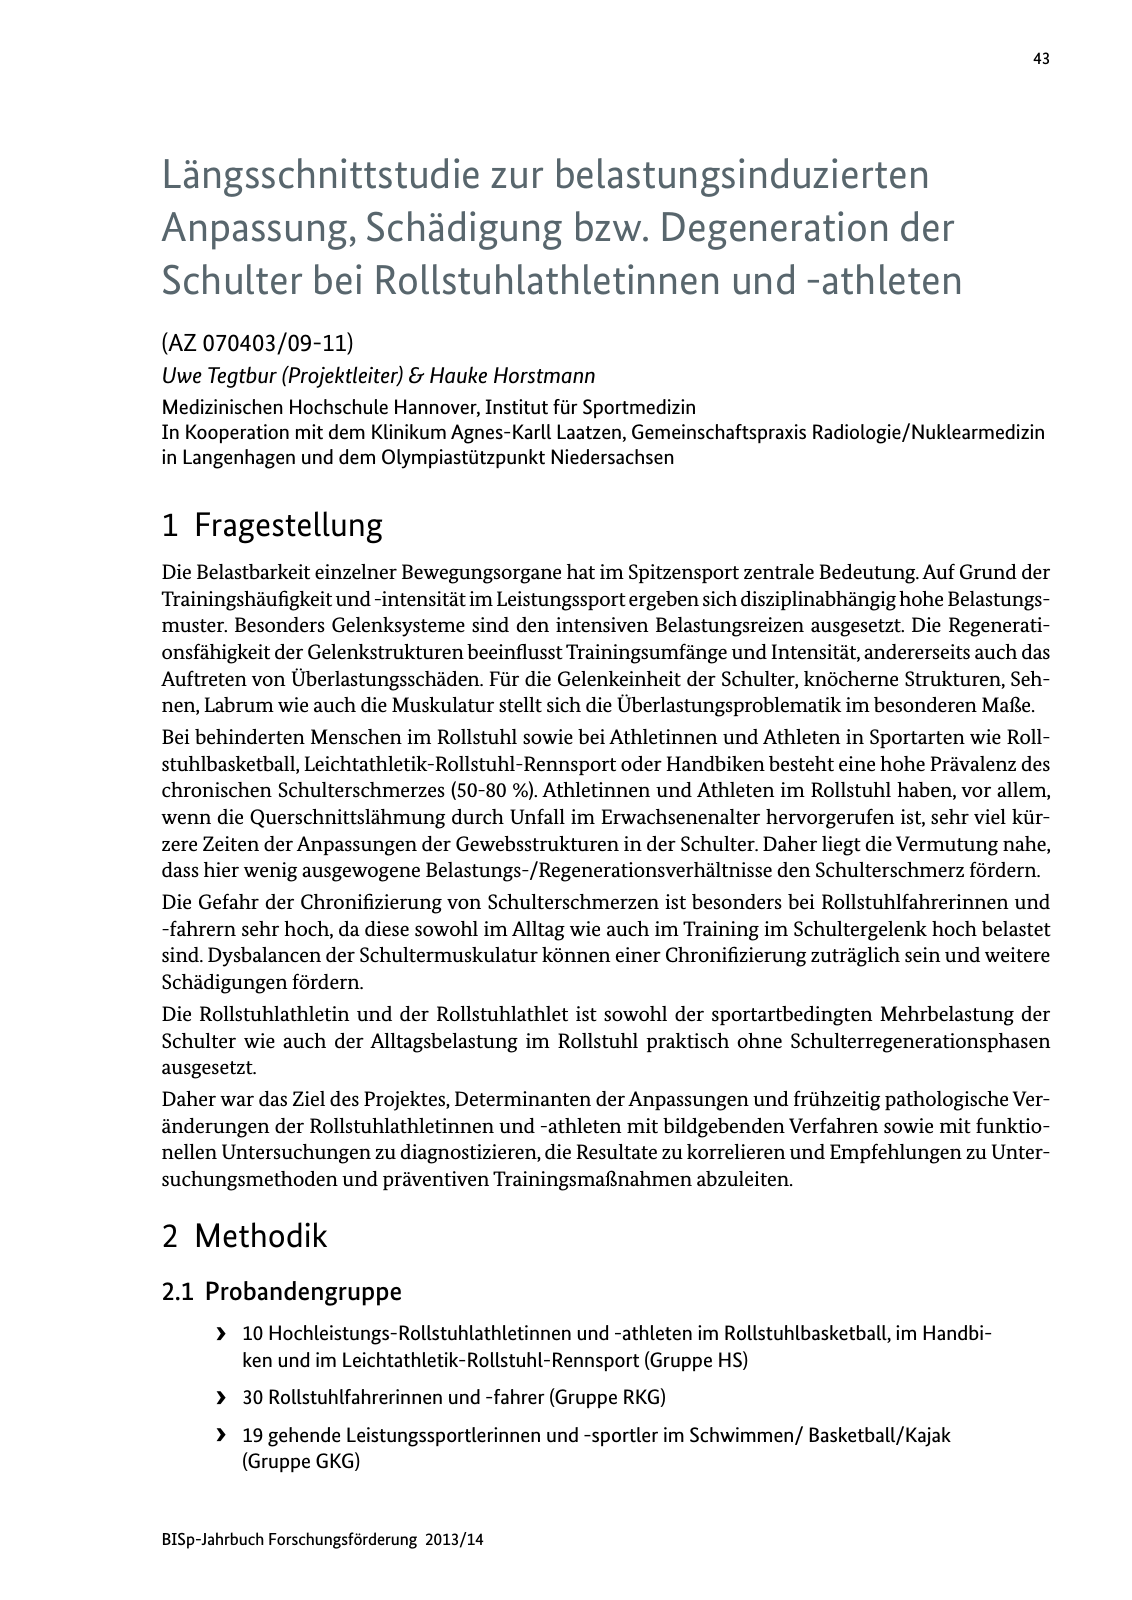 Vorschau BISp-Jahrbuch Forschungsförderung 2013/14 Seite 44